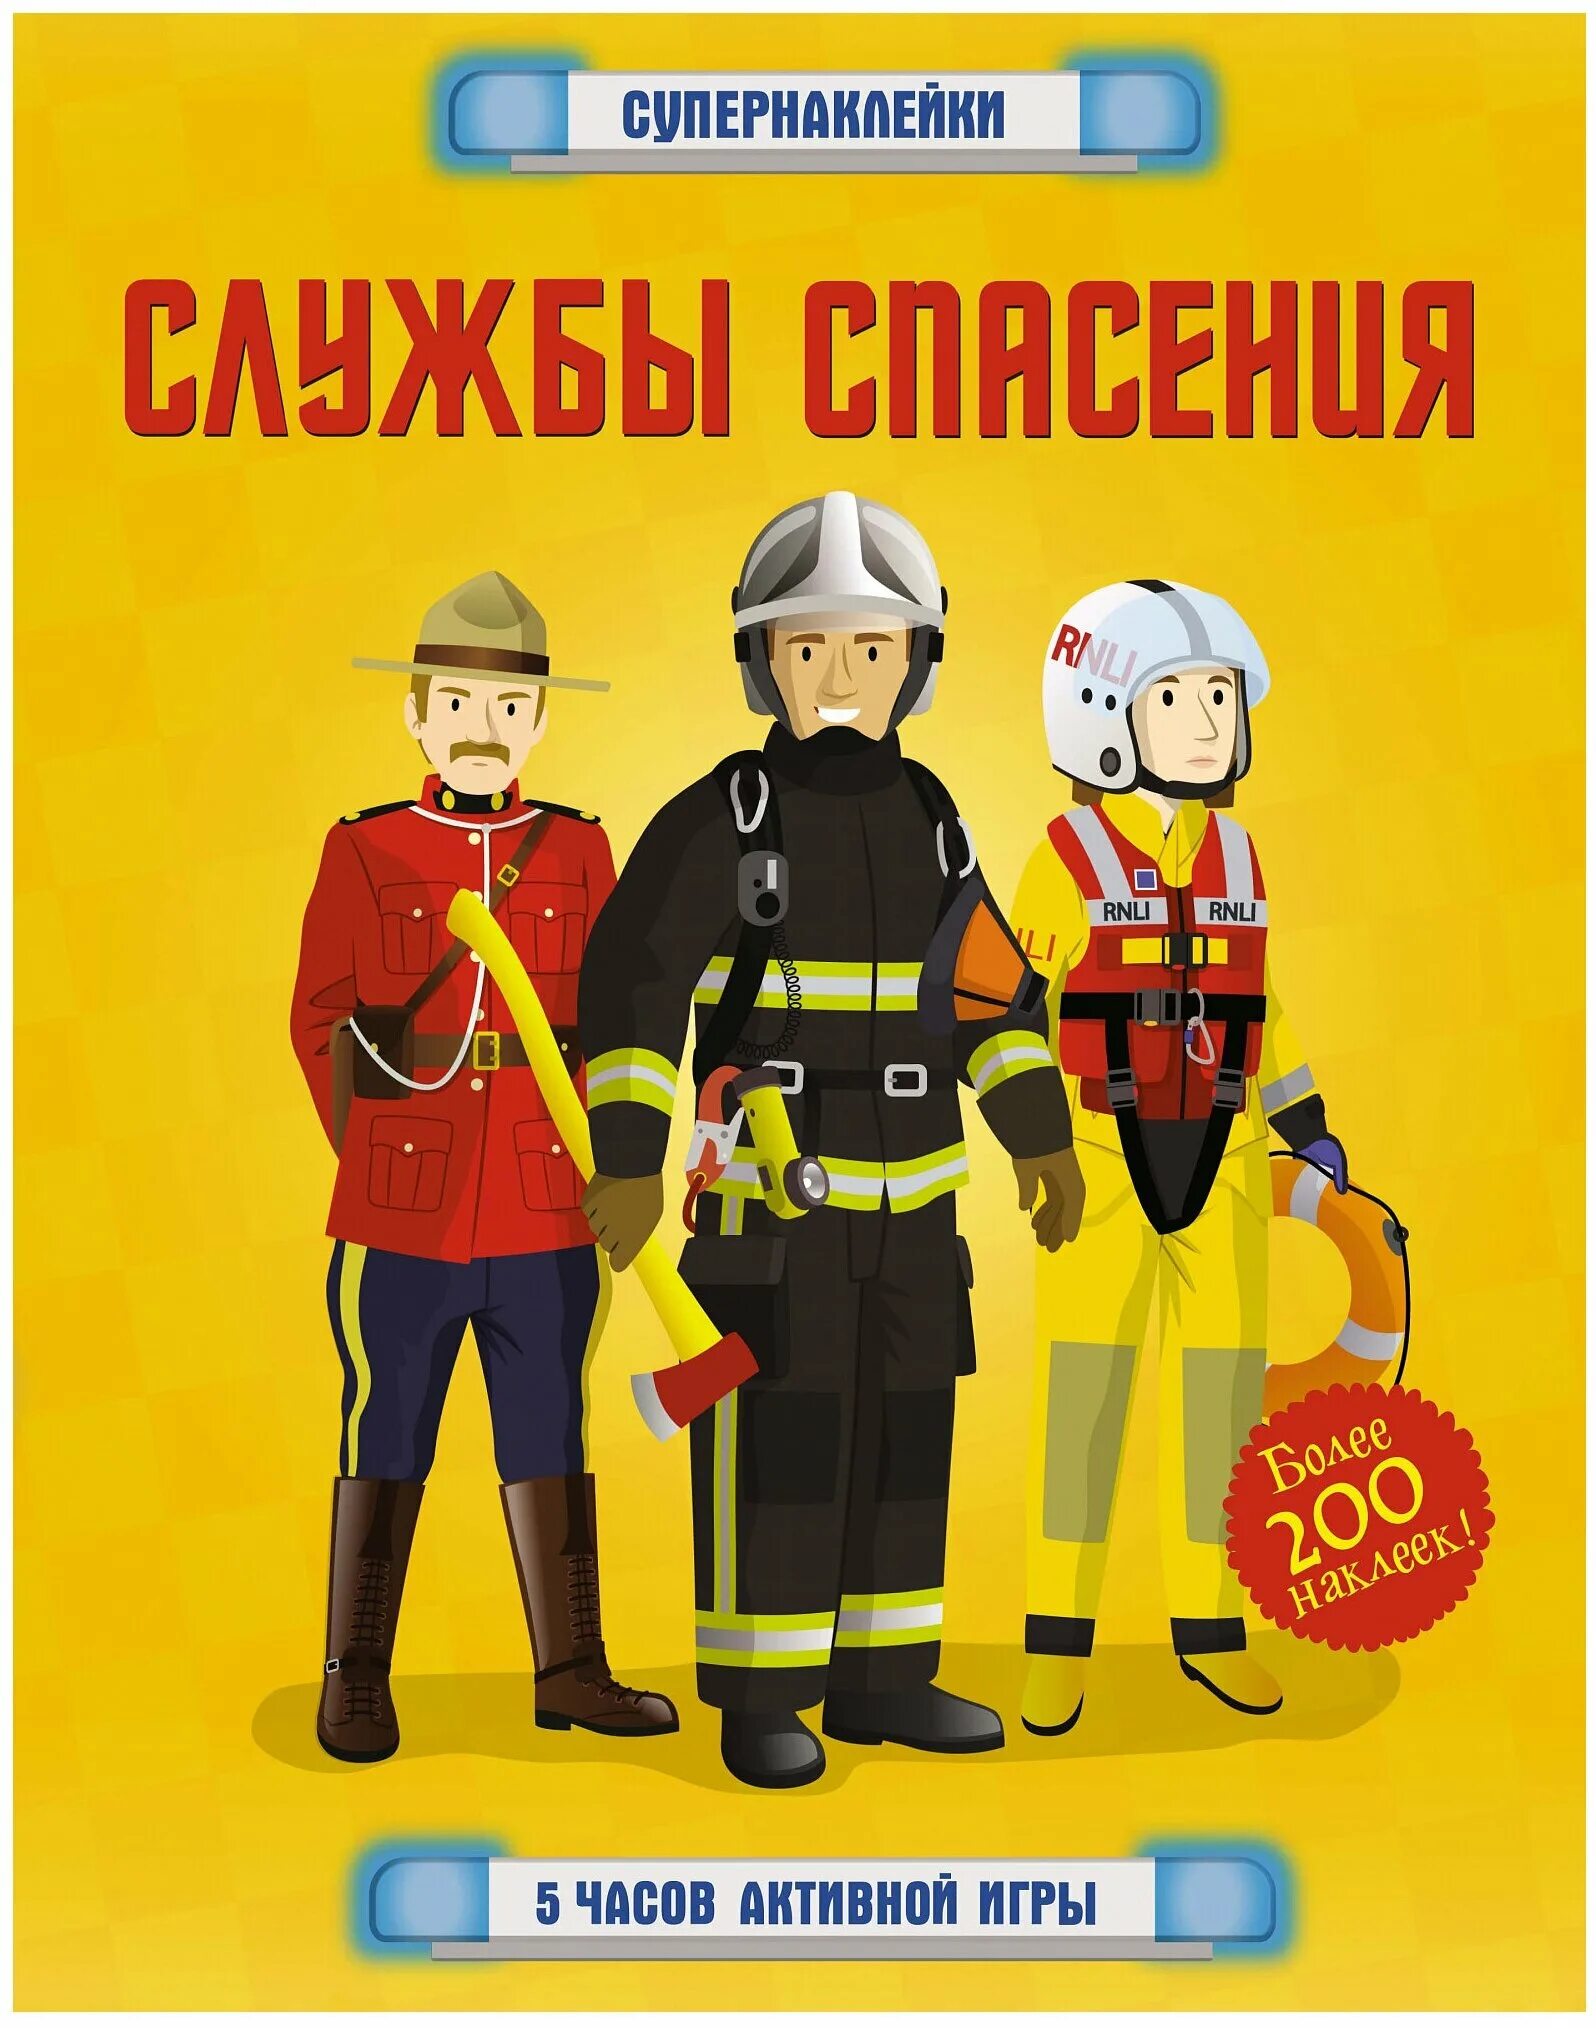 Пожарная служба книги